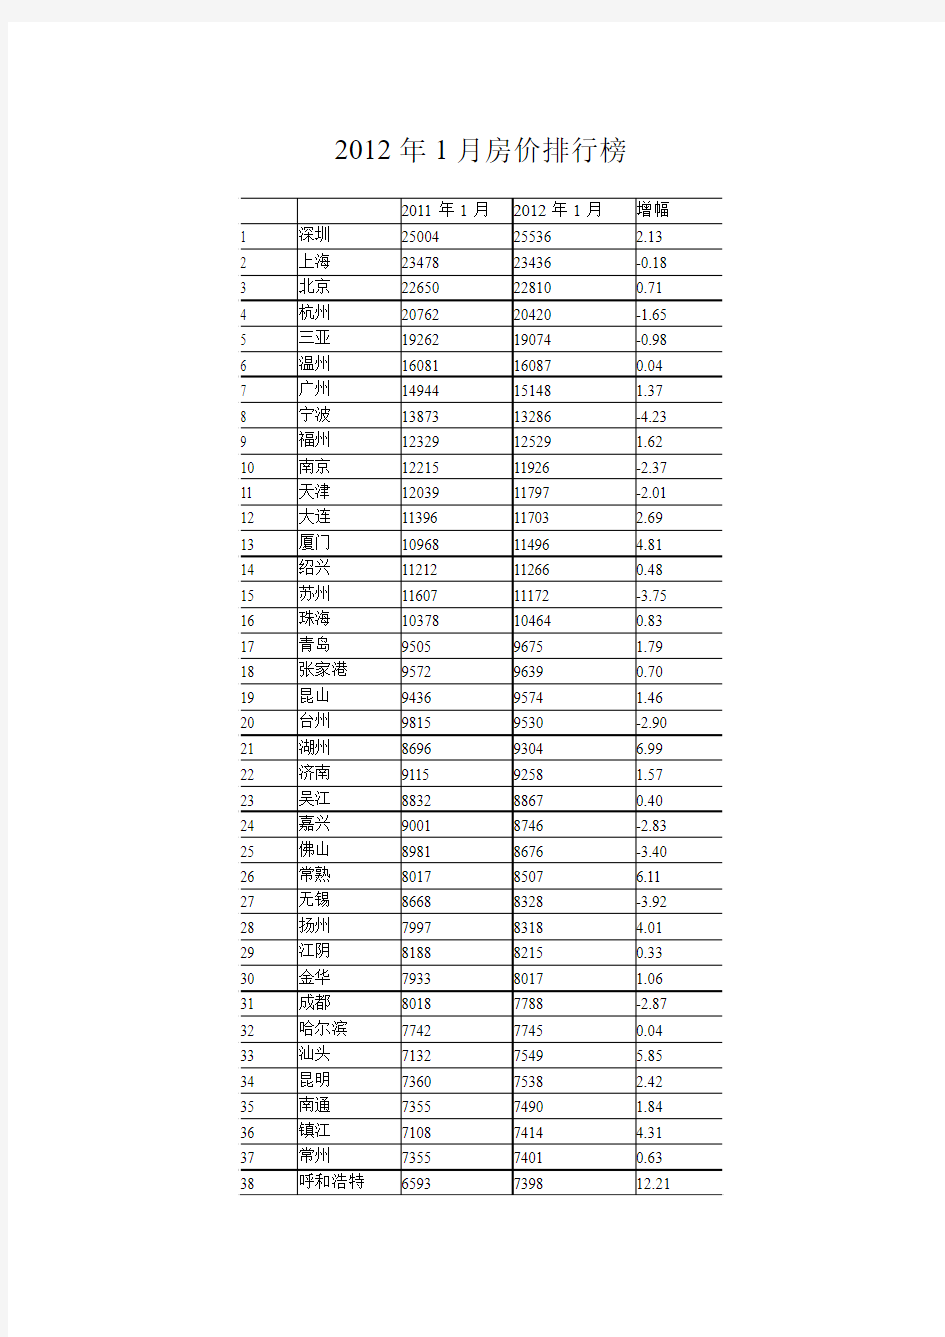 2012年中国城市房价排行榜